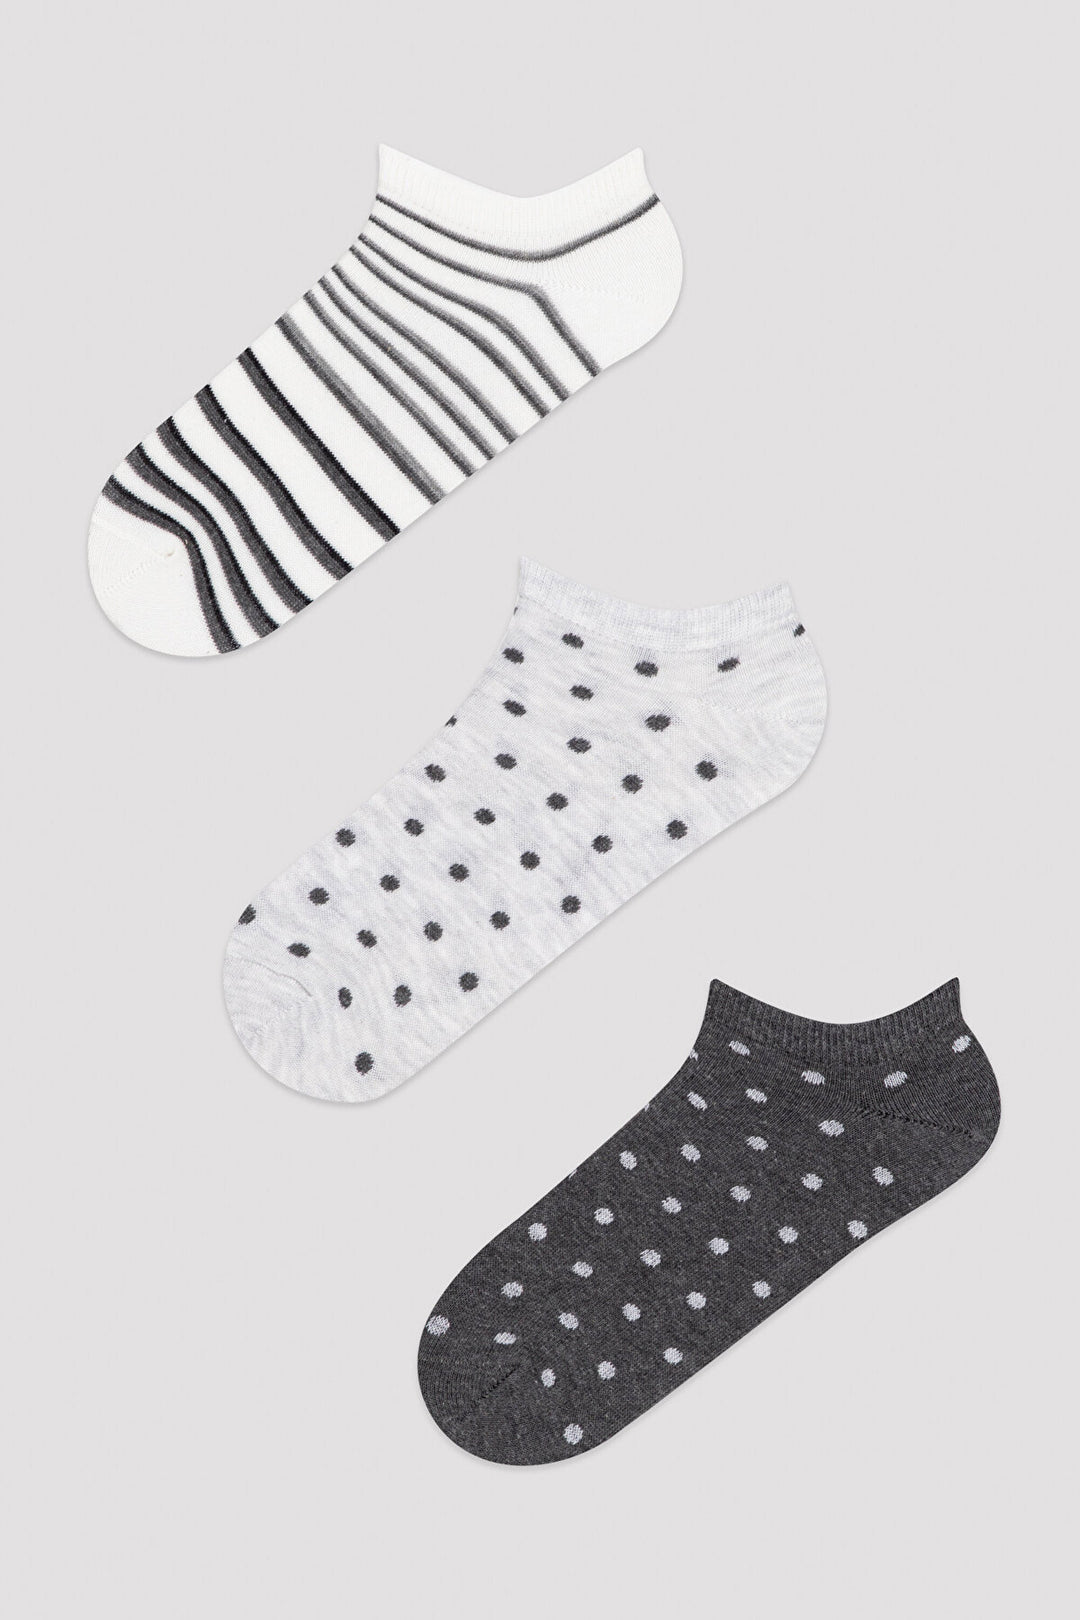 Dot Stripe 3In1 Liner Socks